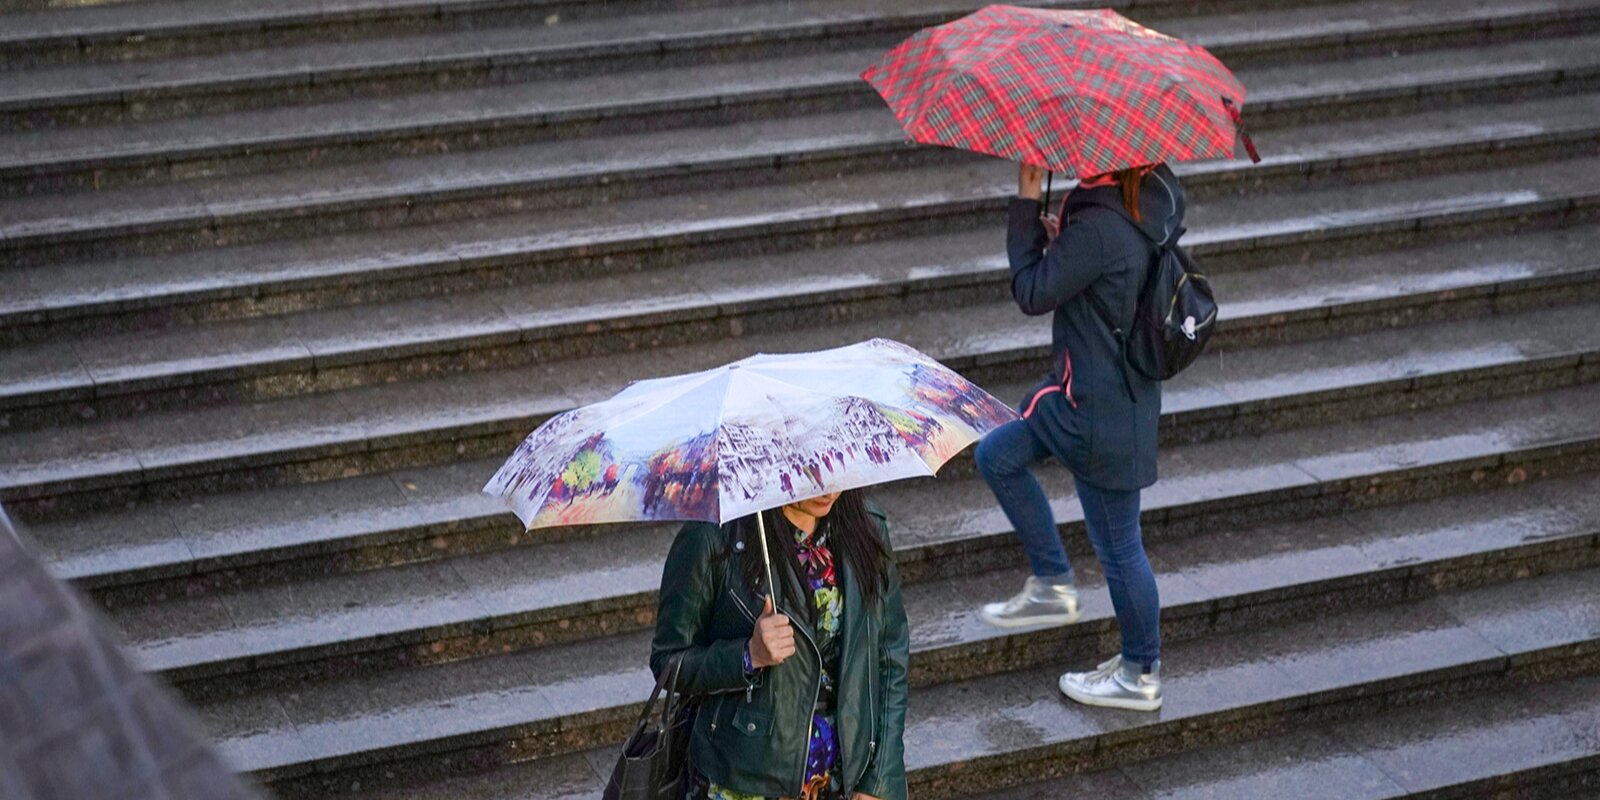 Сотрудники Гидрометцентра рассказали об облачной погоде с дождем в эту субботу в столице